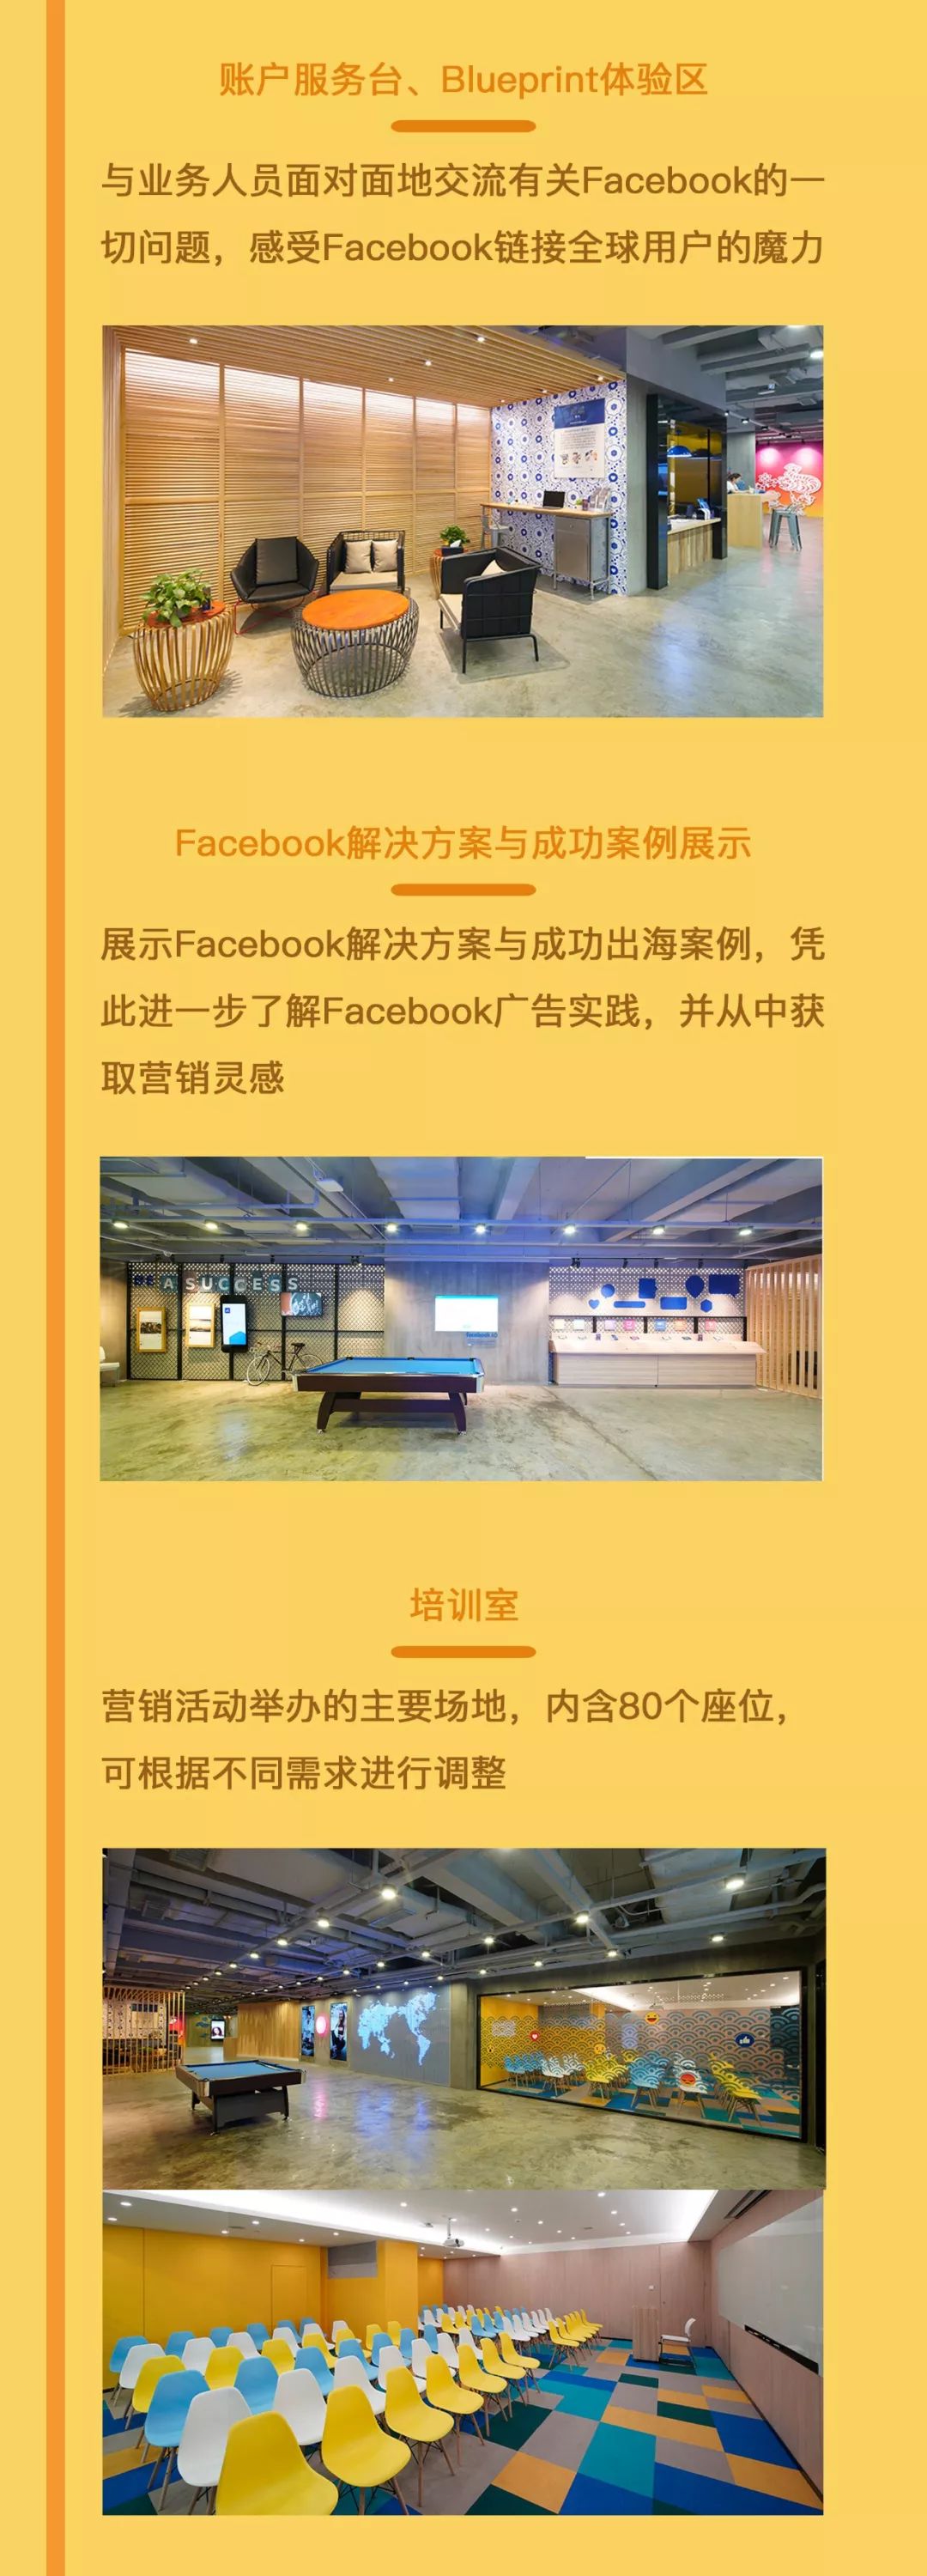 中国首家Facebook海外营销体验中心寻求跨境电商合作伙伴开展定制活动4